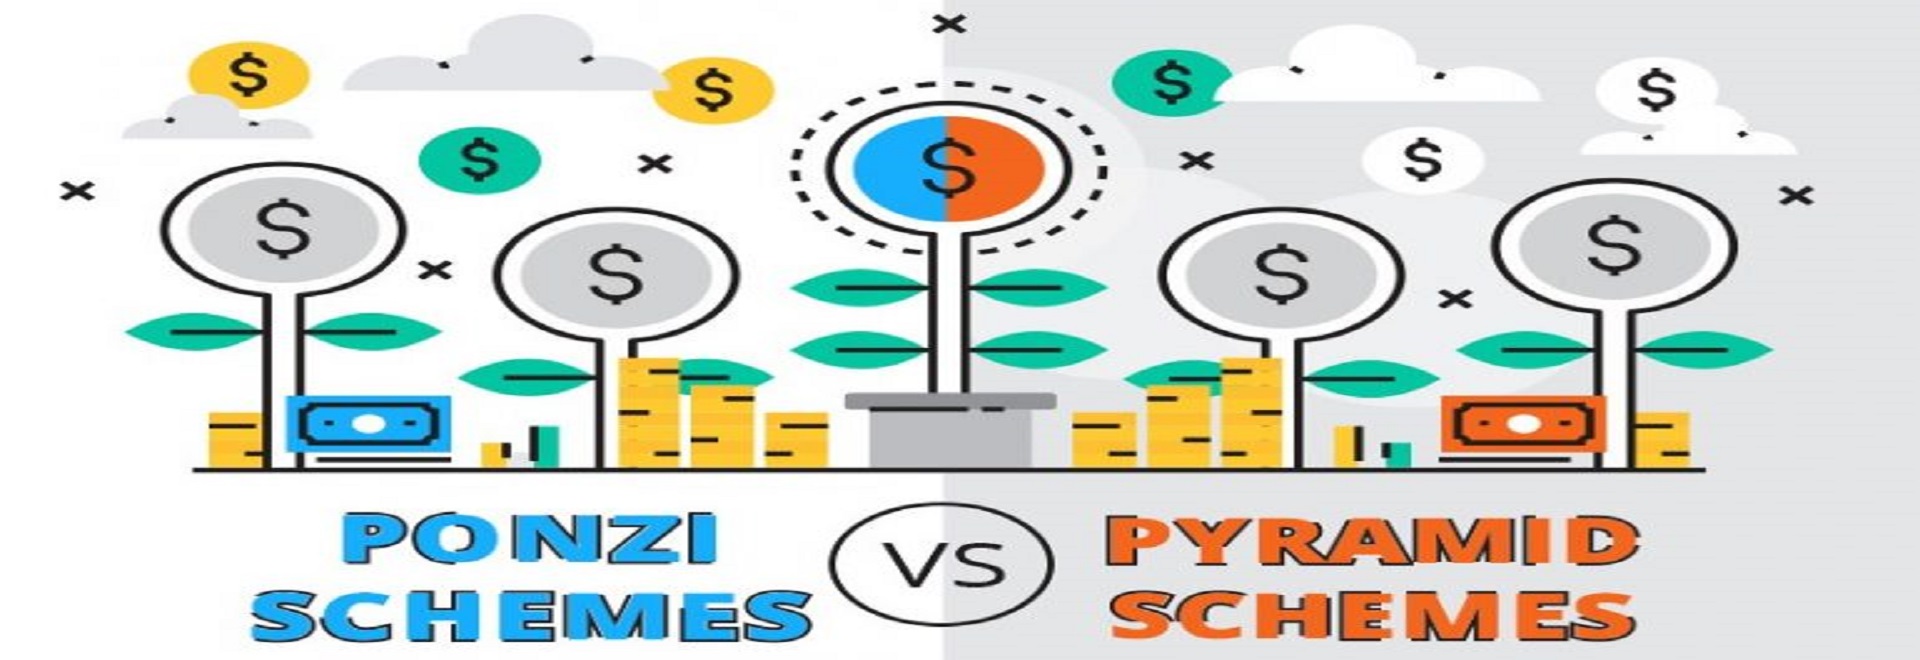 Ponzi Schemes Vs Pyramid Schemes F - صفحه اصلی